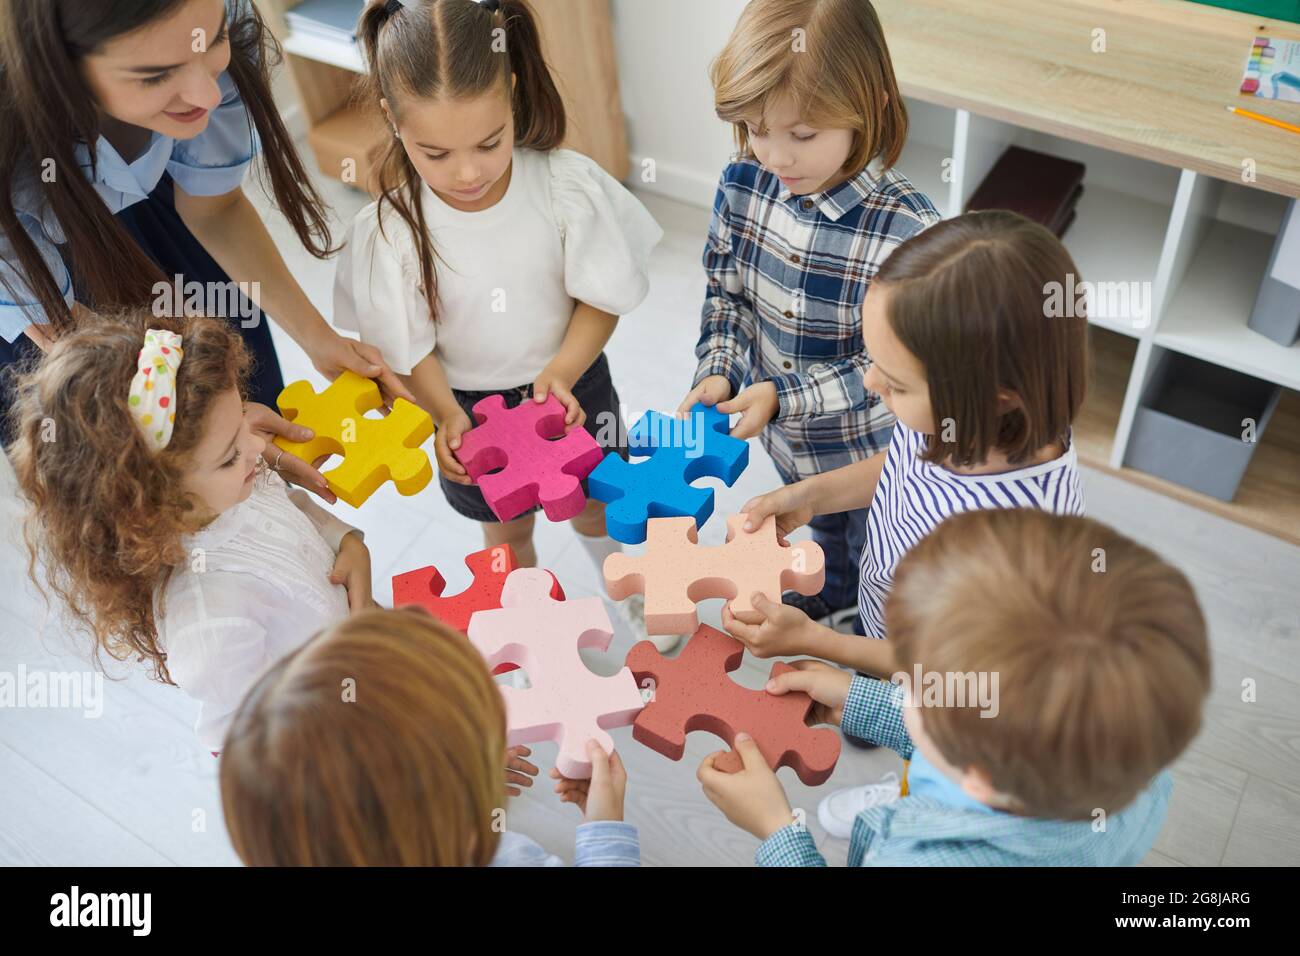 Une équipe de petits enfants, avec leur professeur, joint des pièces d'un puzzle Banque D'Images